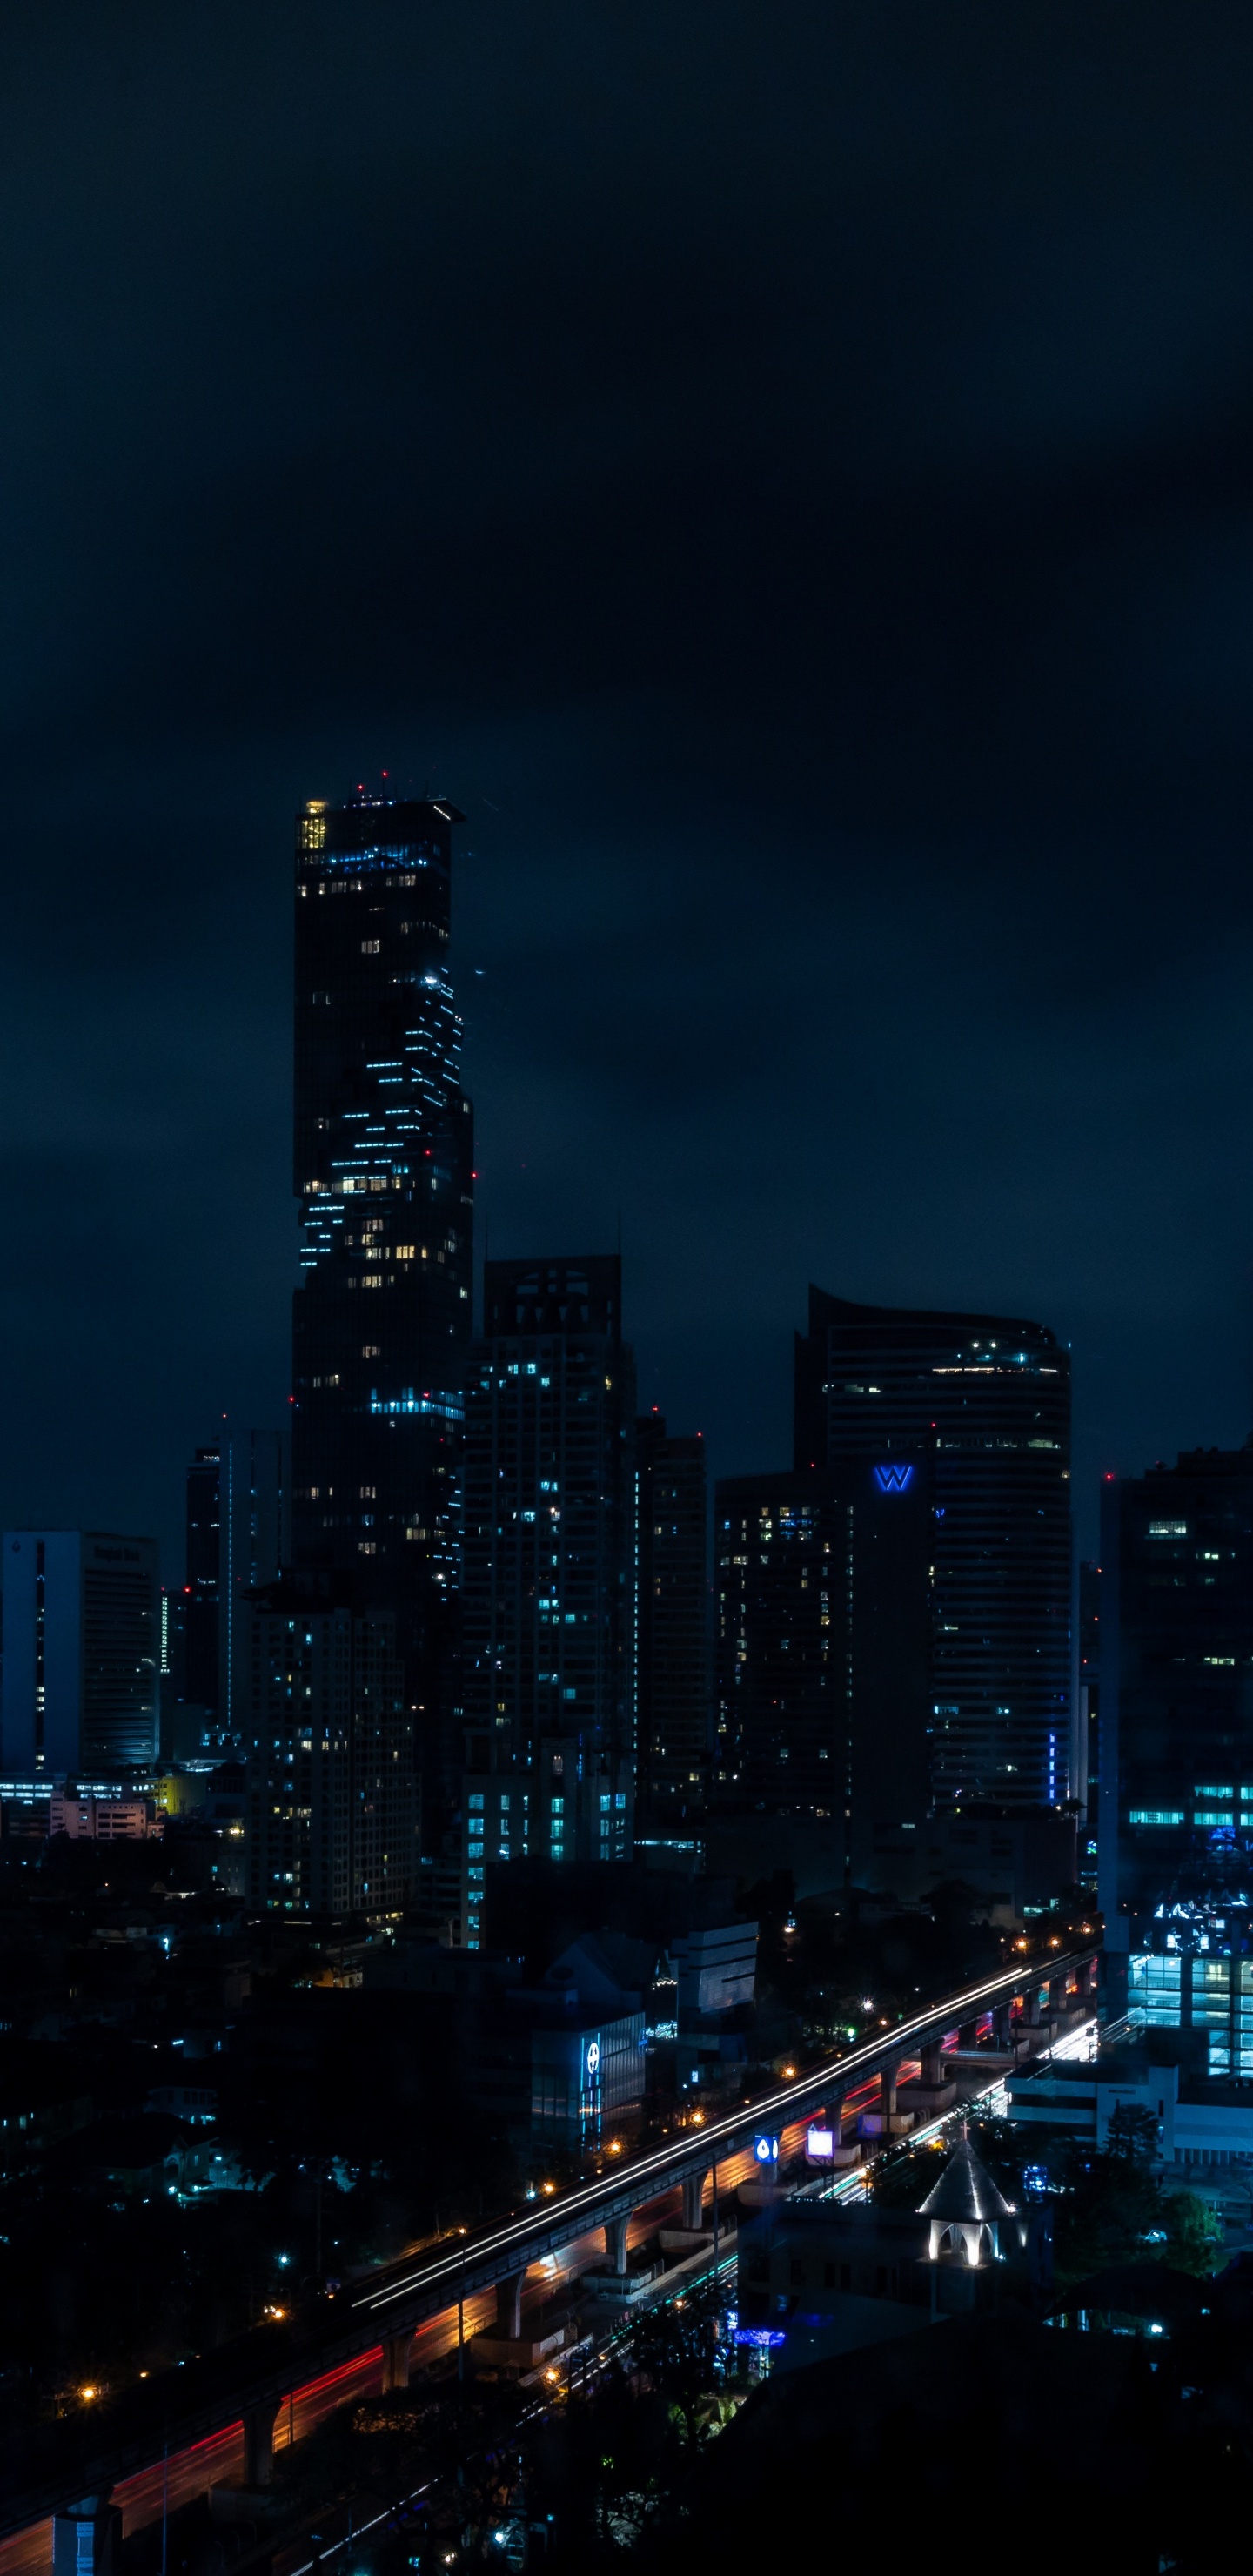 Skyline Der Stadt Bei Nacht Night. Wallpaper in 1440x2960 Resolution